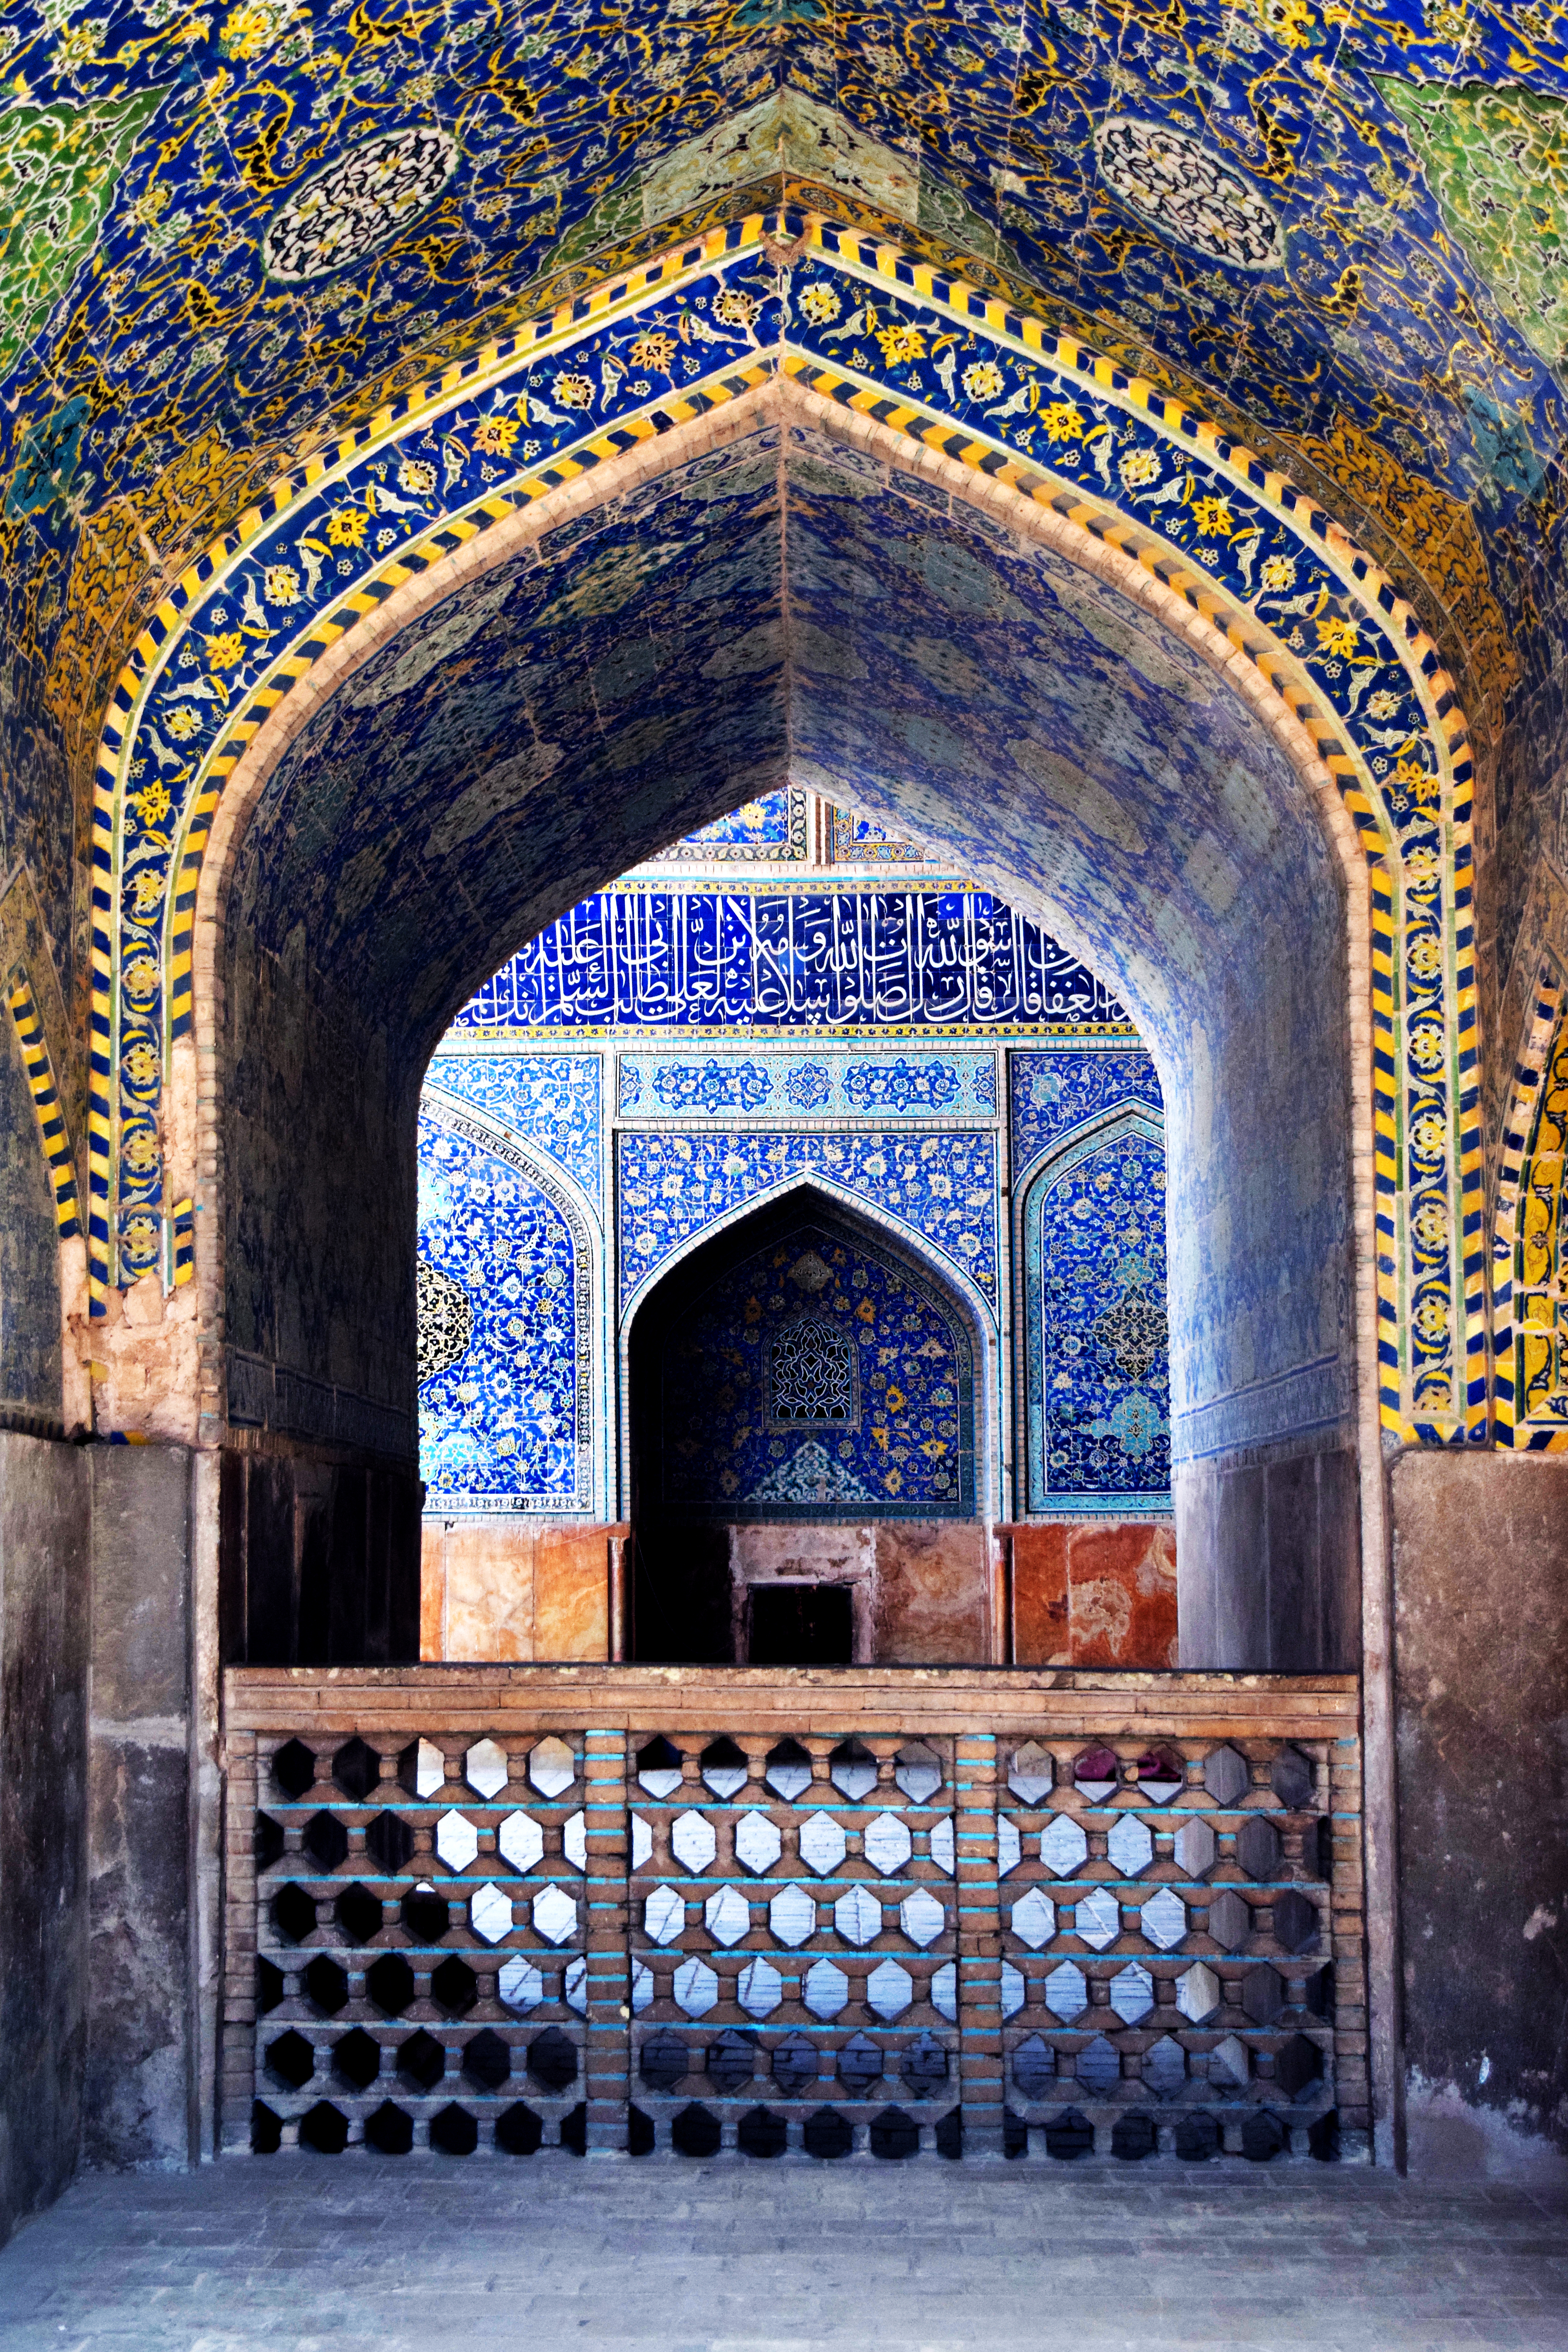 مدرسه عباسی (مدرسه ناصری)، مسجد جامع شاه عباسی - اصفهان 